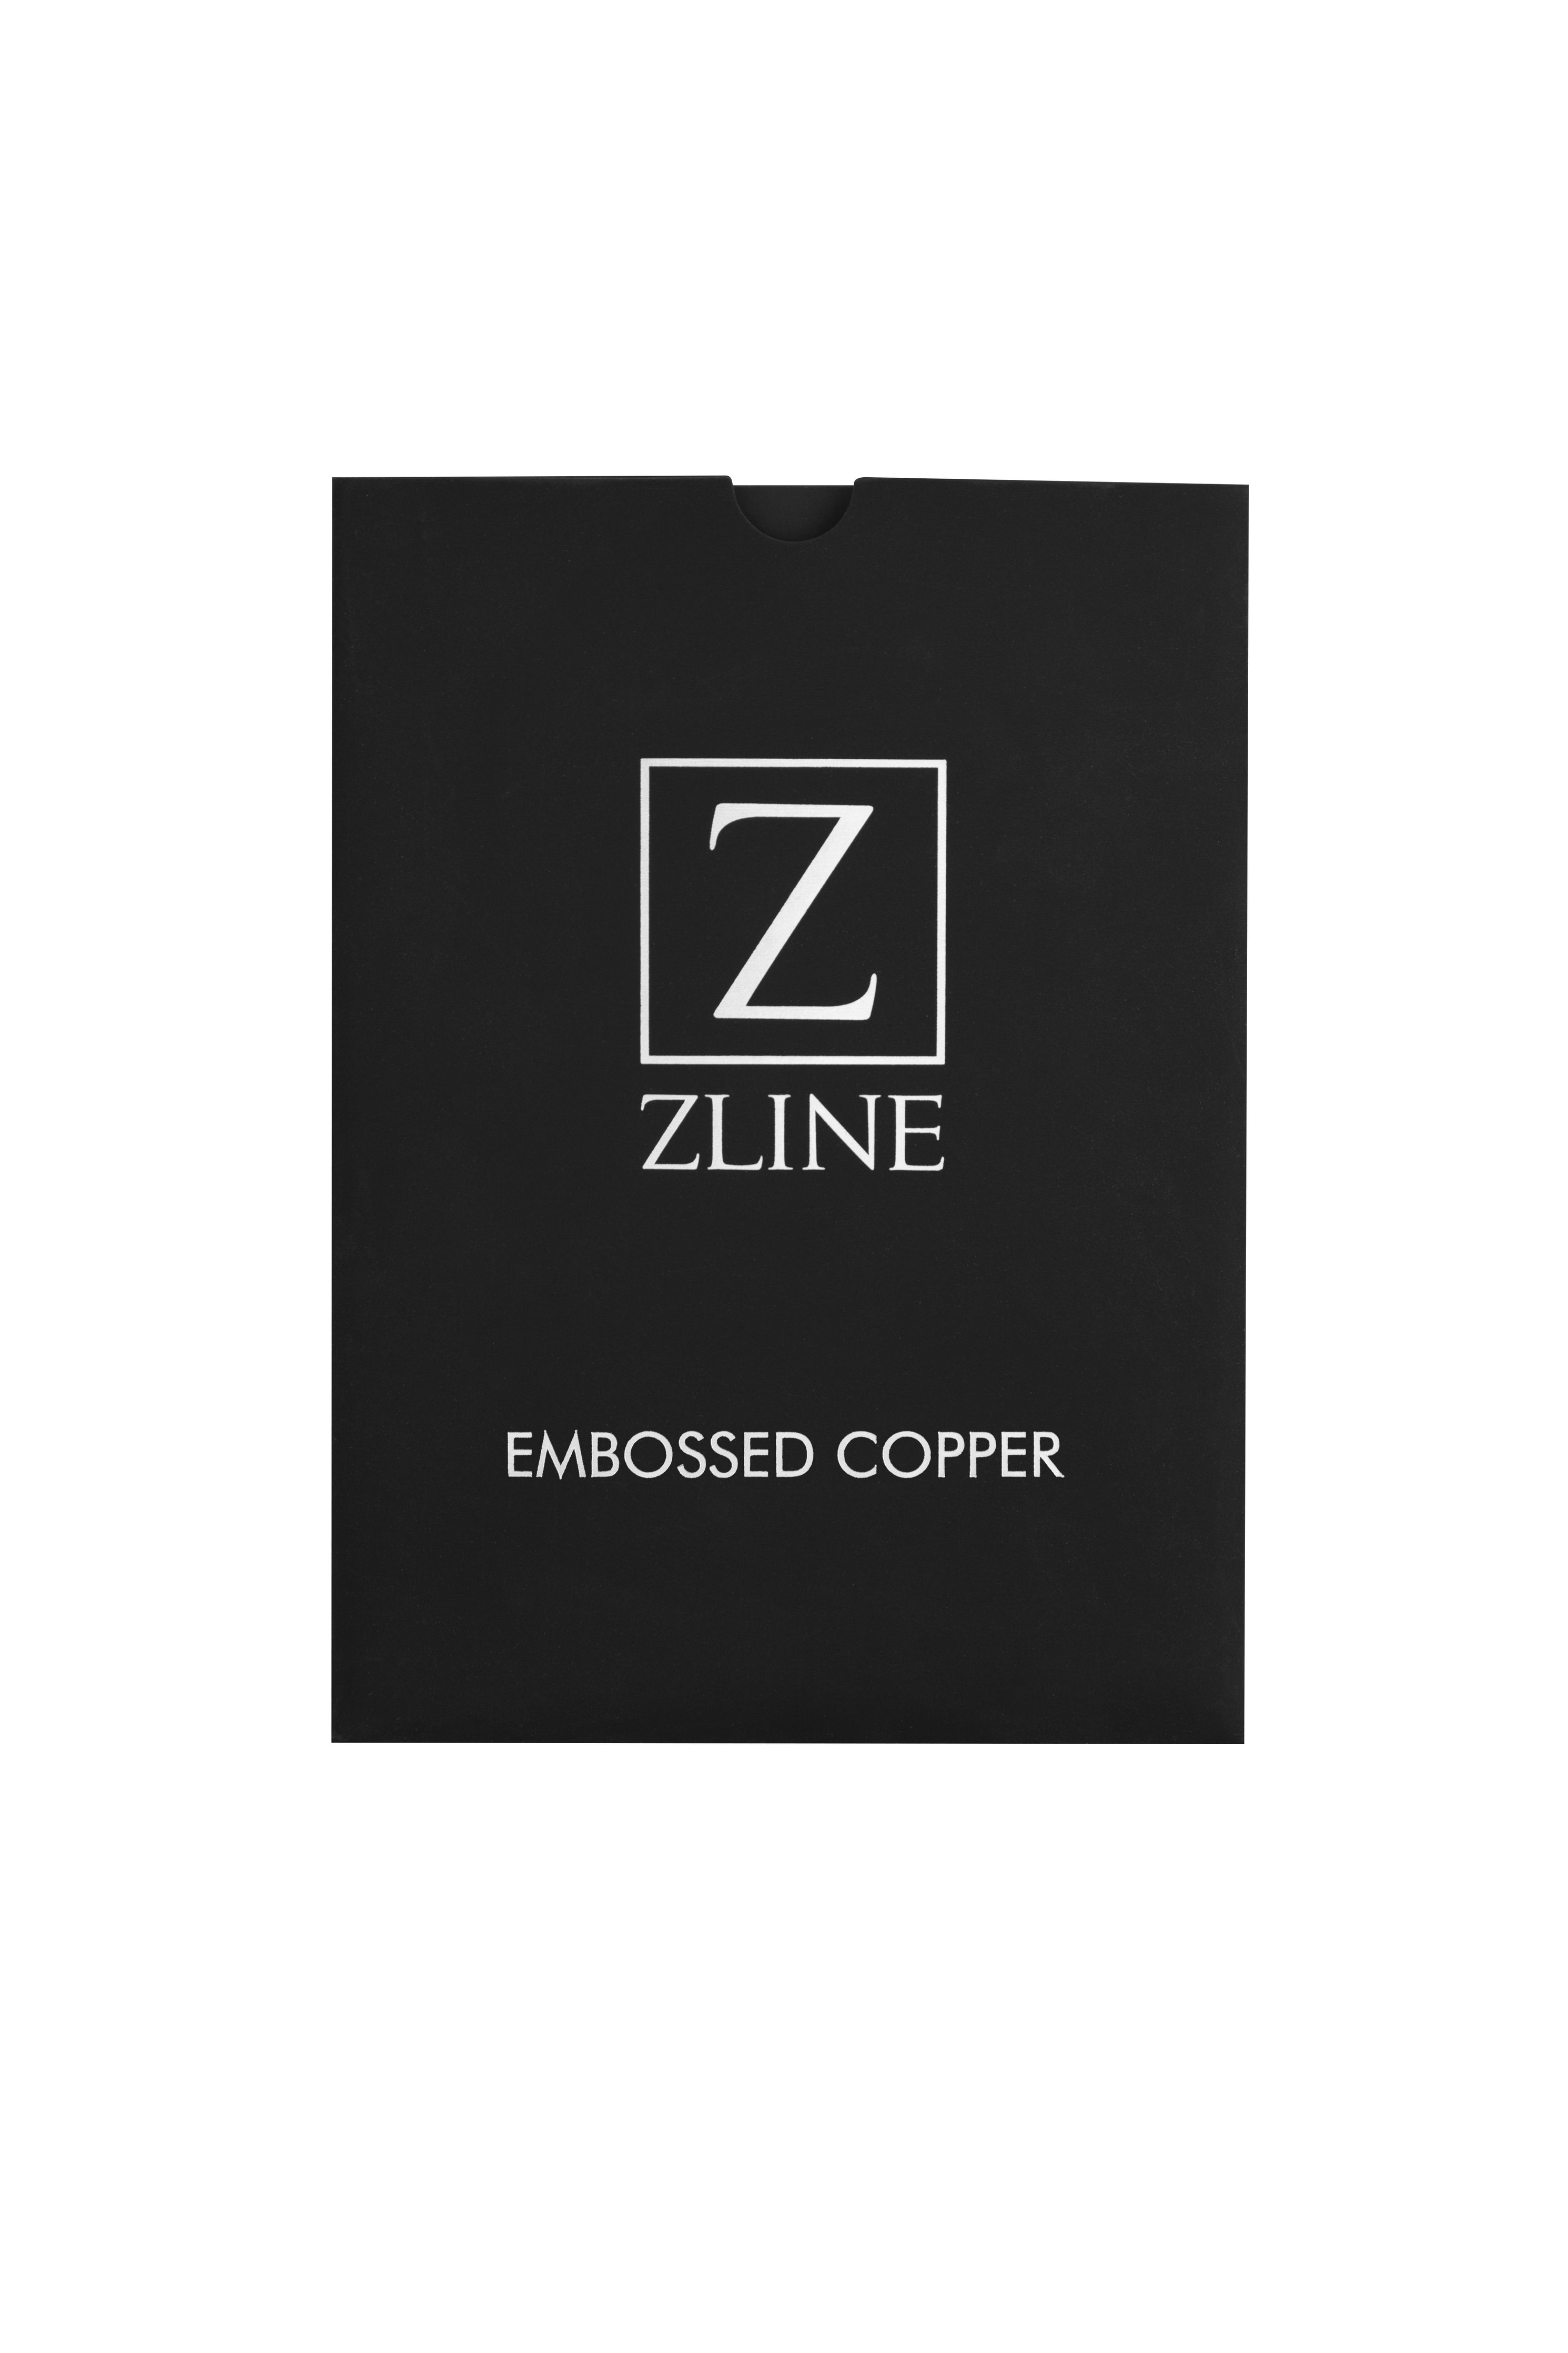 3 x 5 Embossed Copper Sample (CS-E)